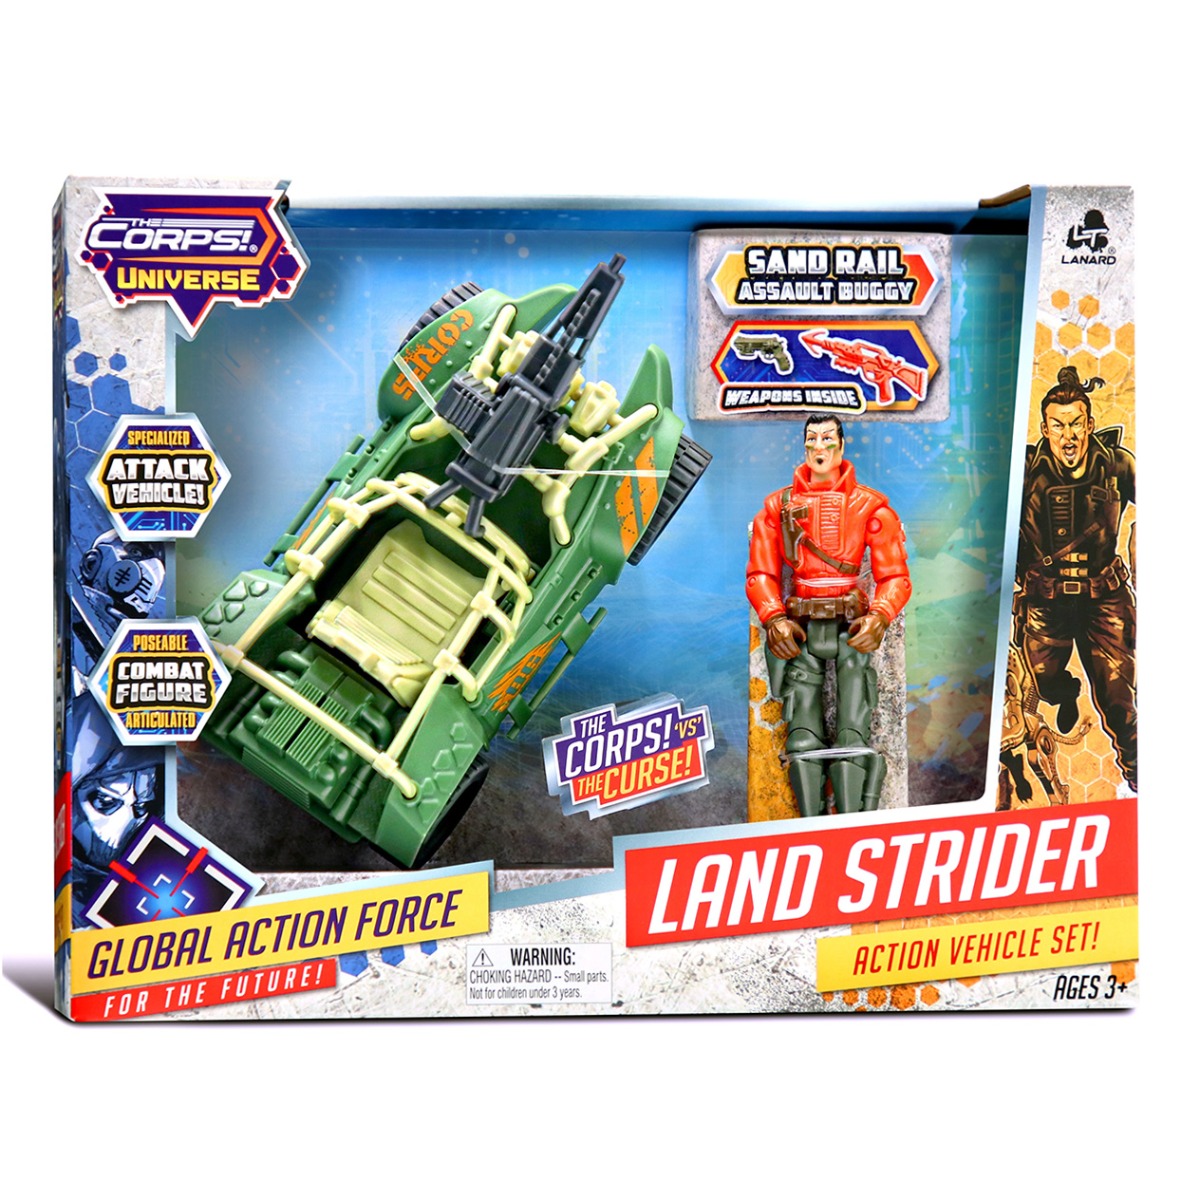 Tanc de lupta cu figurina, Sand Rail, The Corps Universe, Lanard Toys Corps